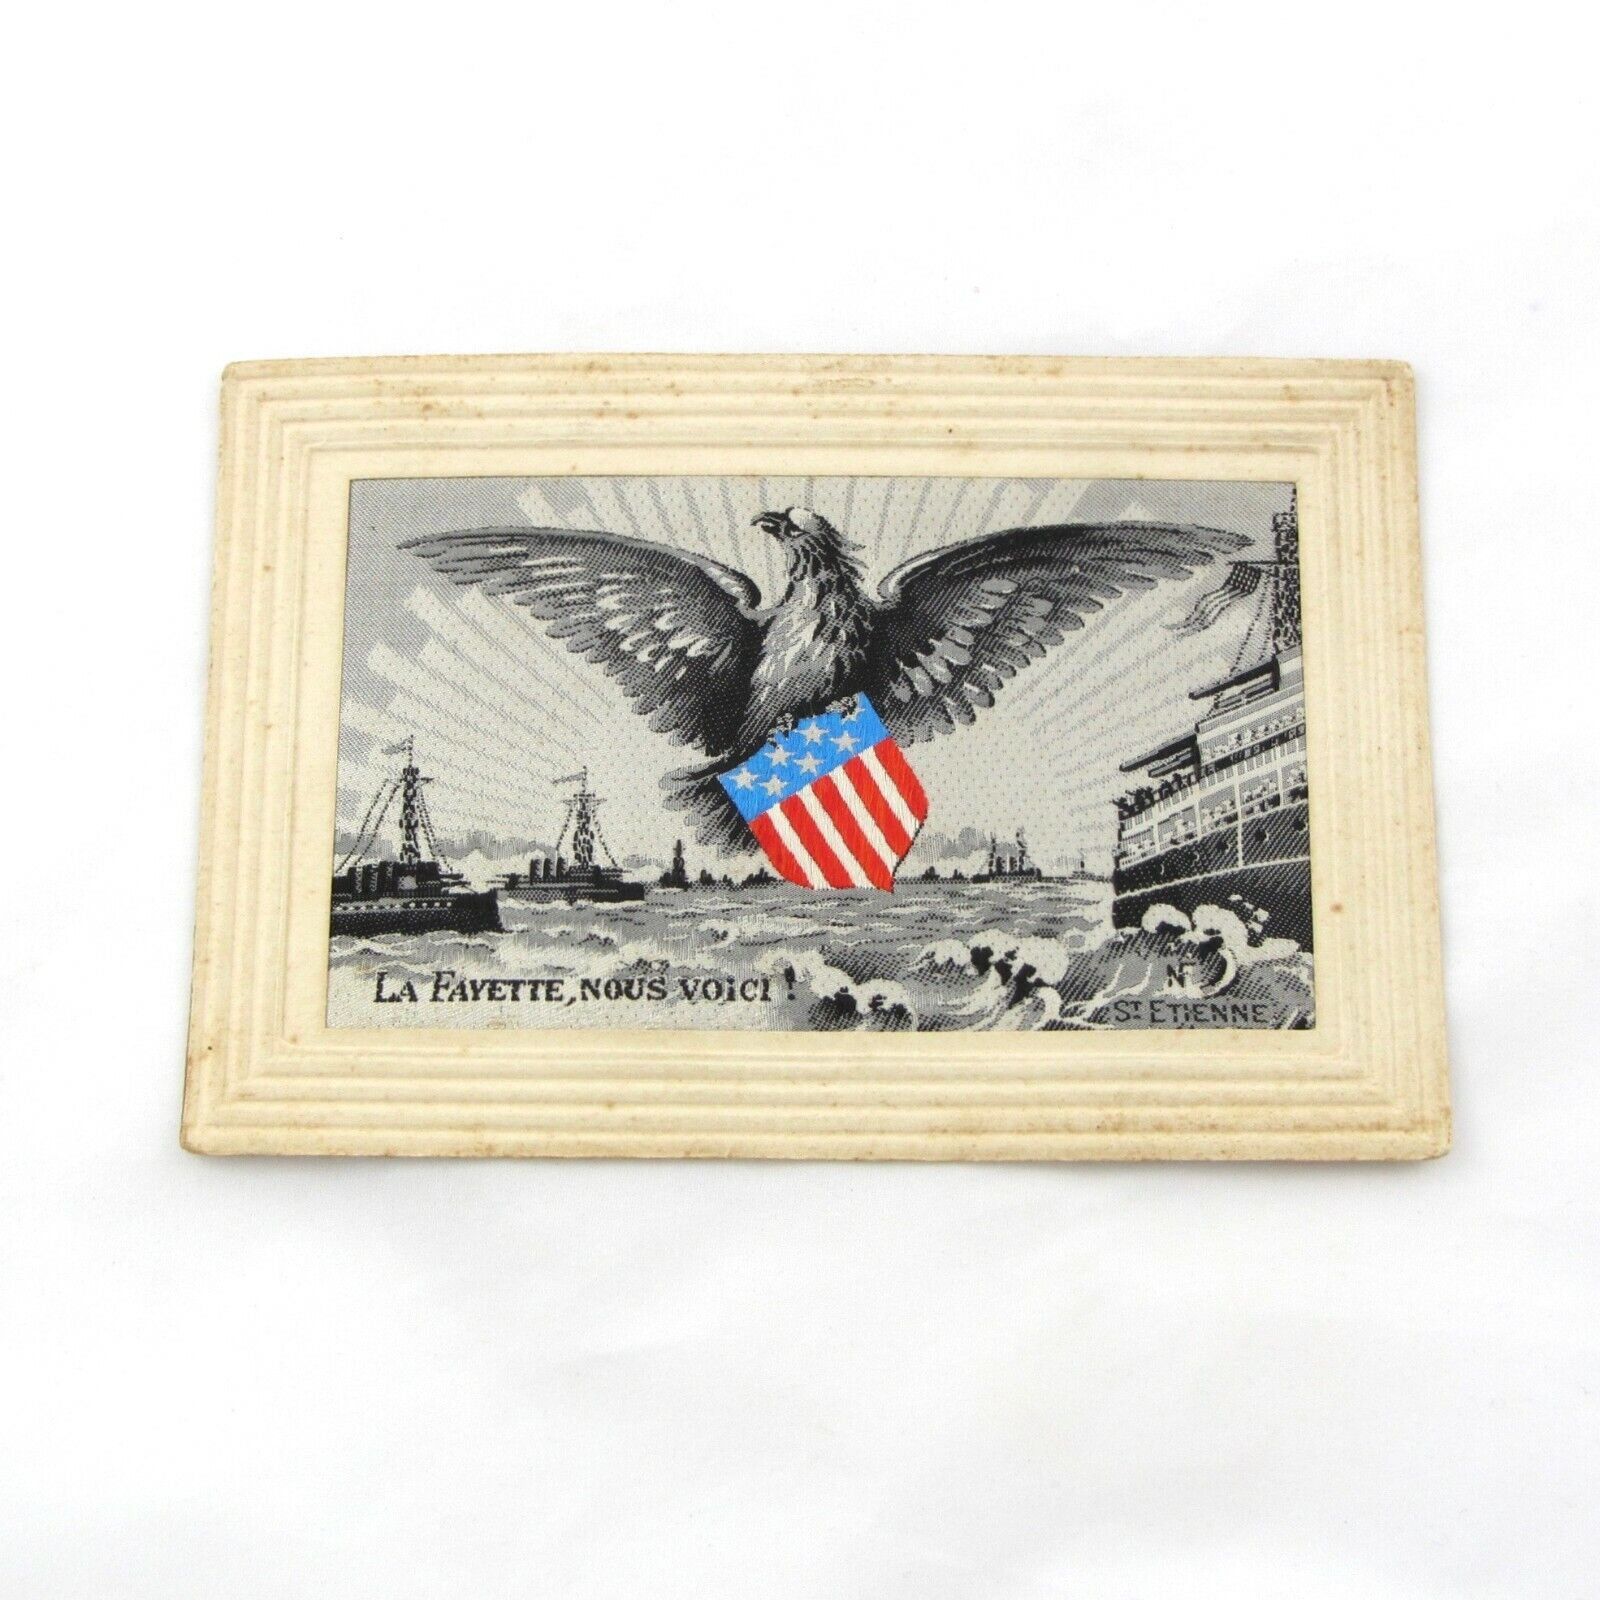 WW1 Woven Silk Patriotic Postcard Neyret Freres La Fayette, Nous Voici Rare HTF